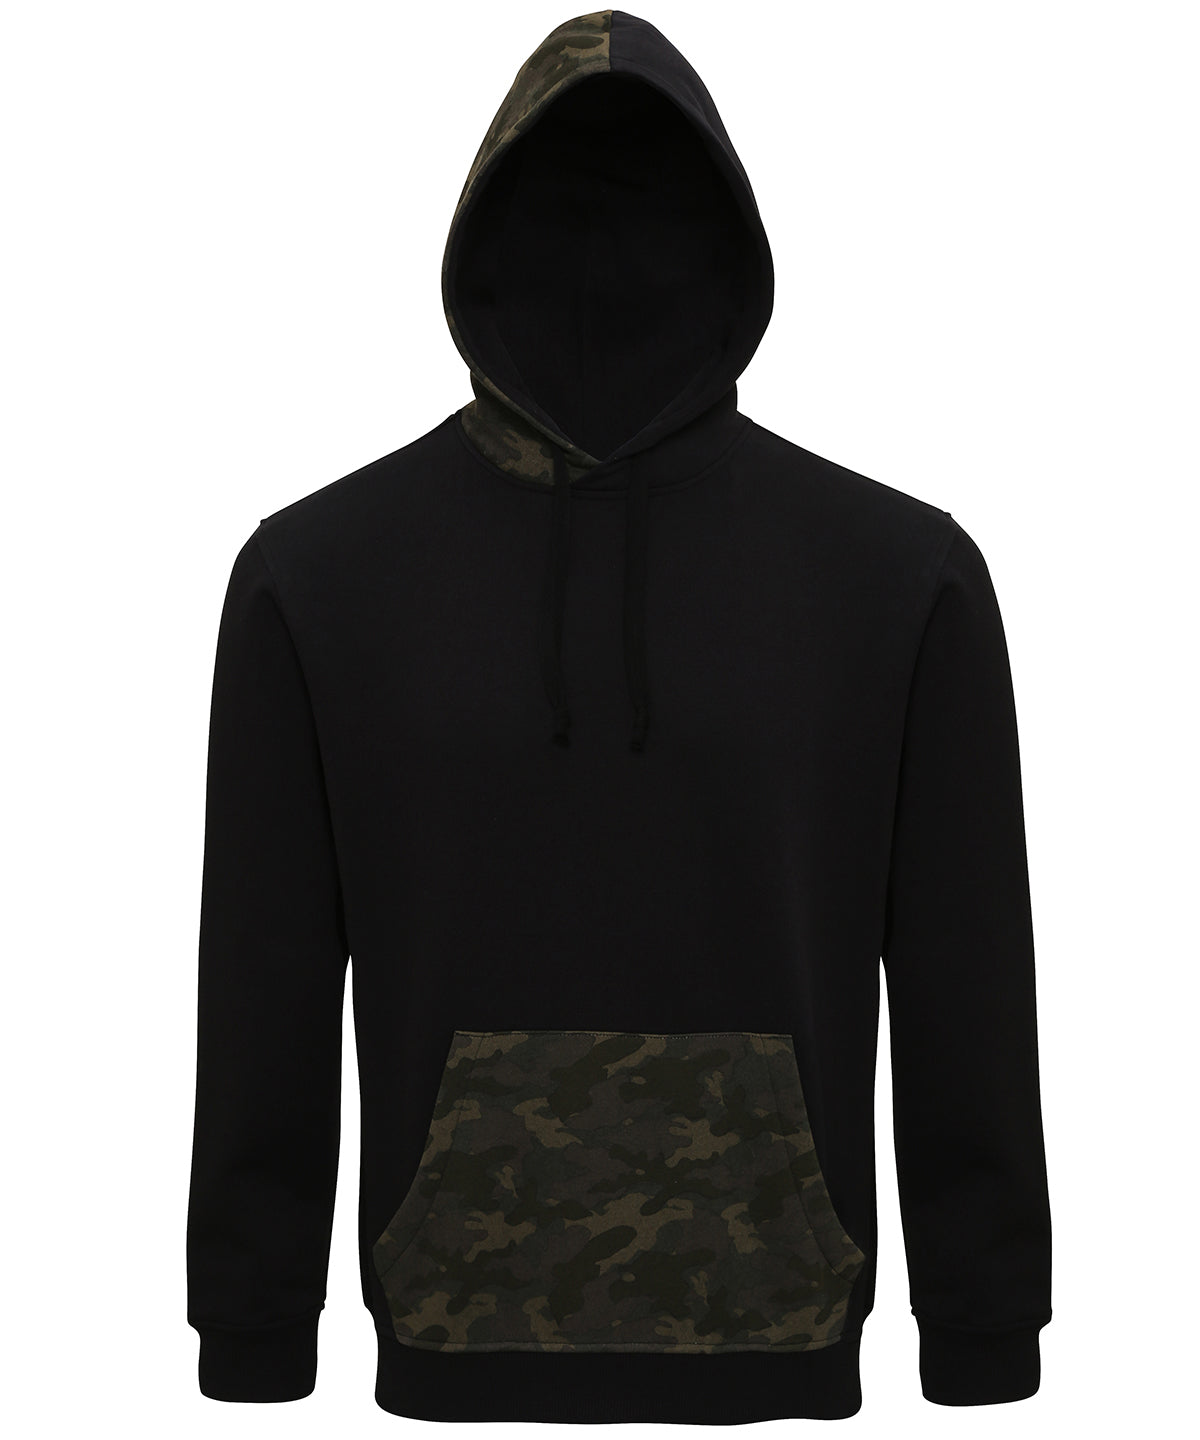 Personalised Hoodies - Black Asquith & Fox Men's camo trimmed hoodie